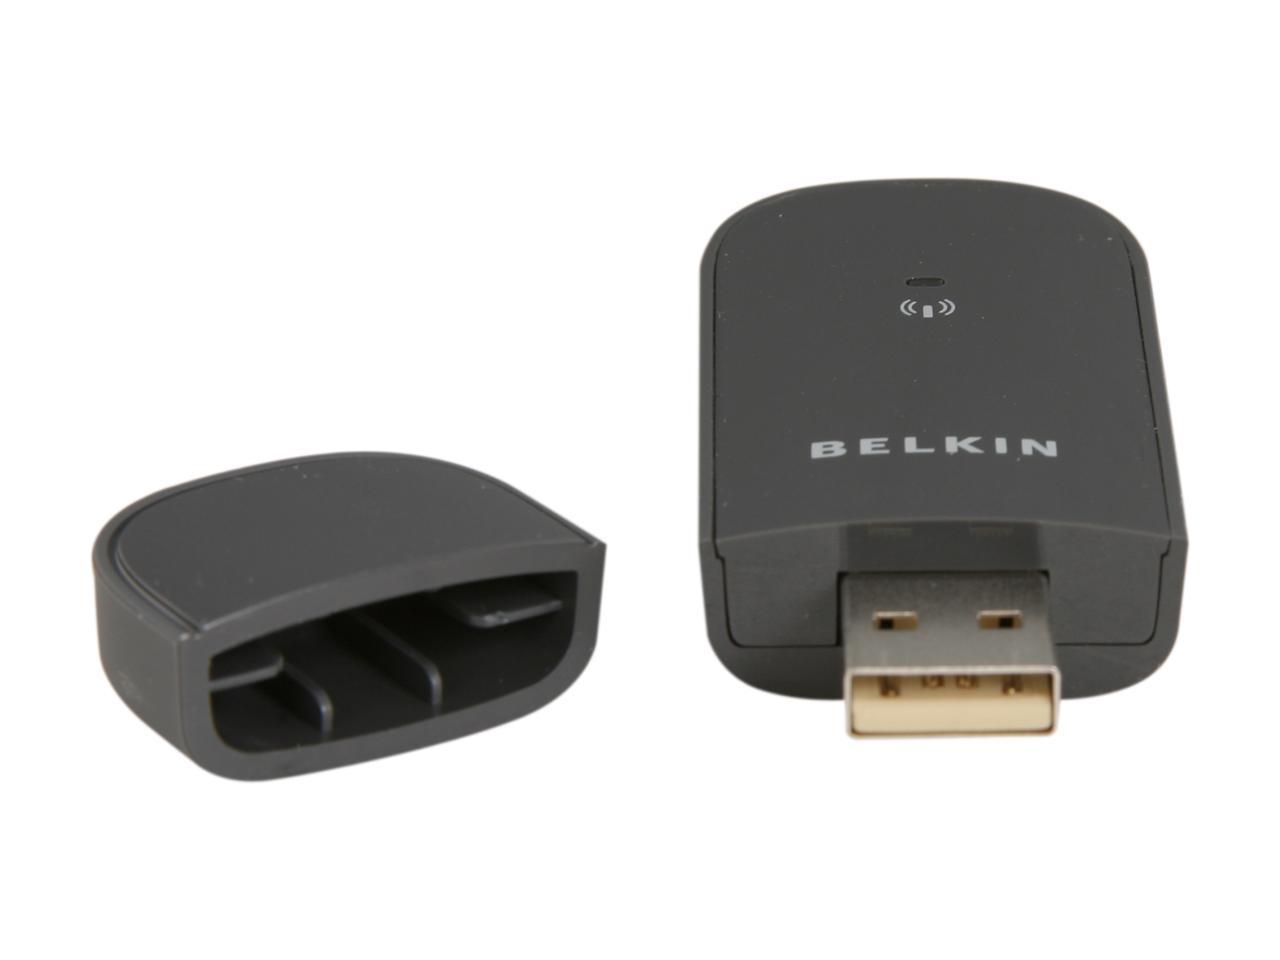 belkin wireless g usb network adapter driver f907080